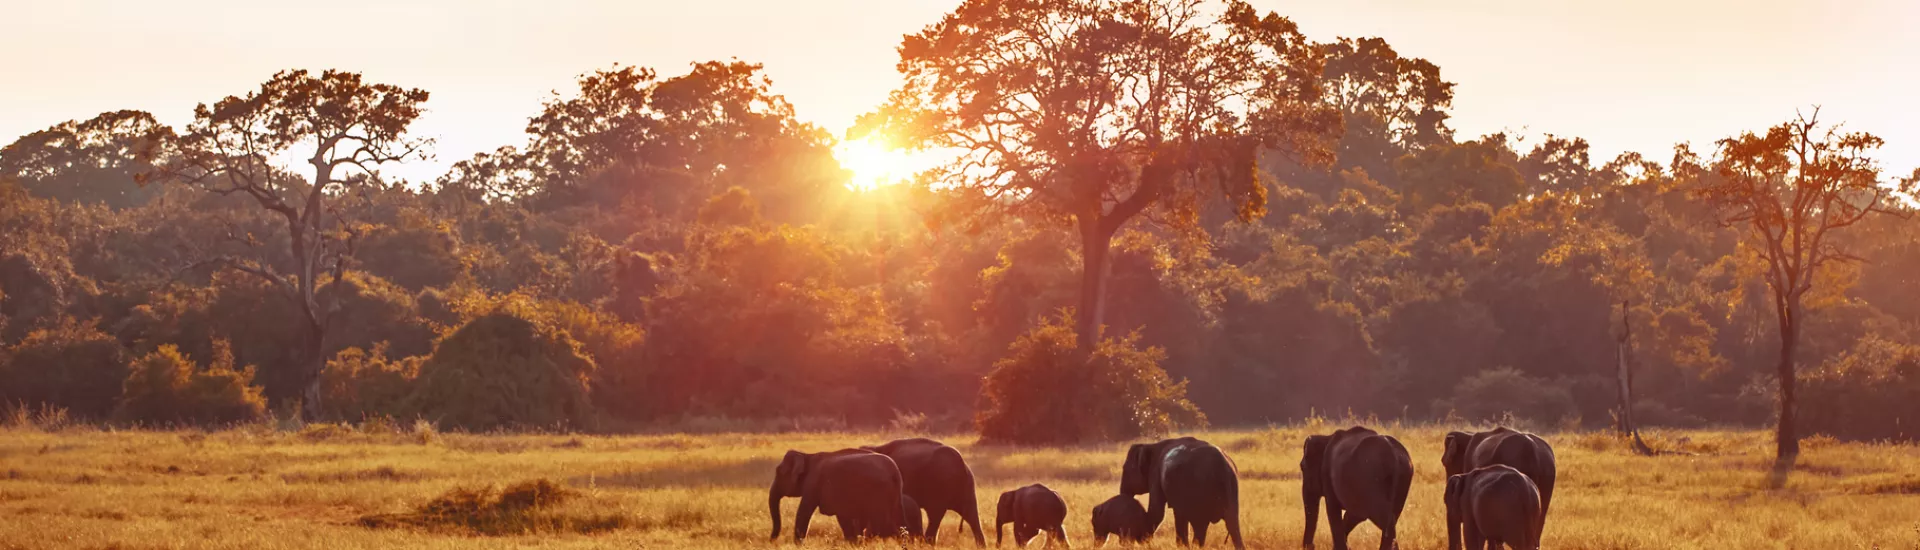 Elefanten marschieren im Sonnenuntergang auf Sri Lanka